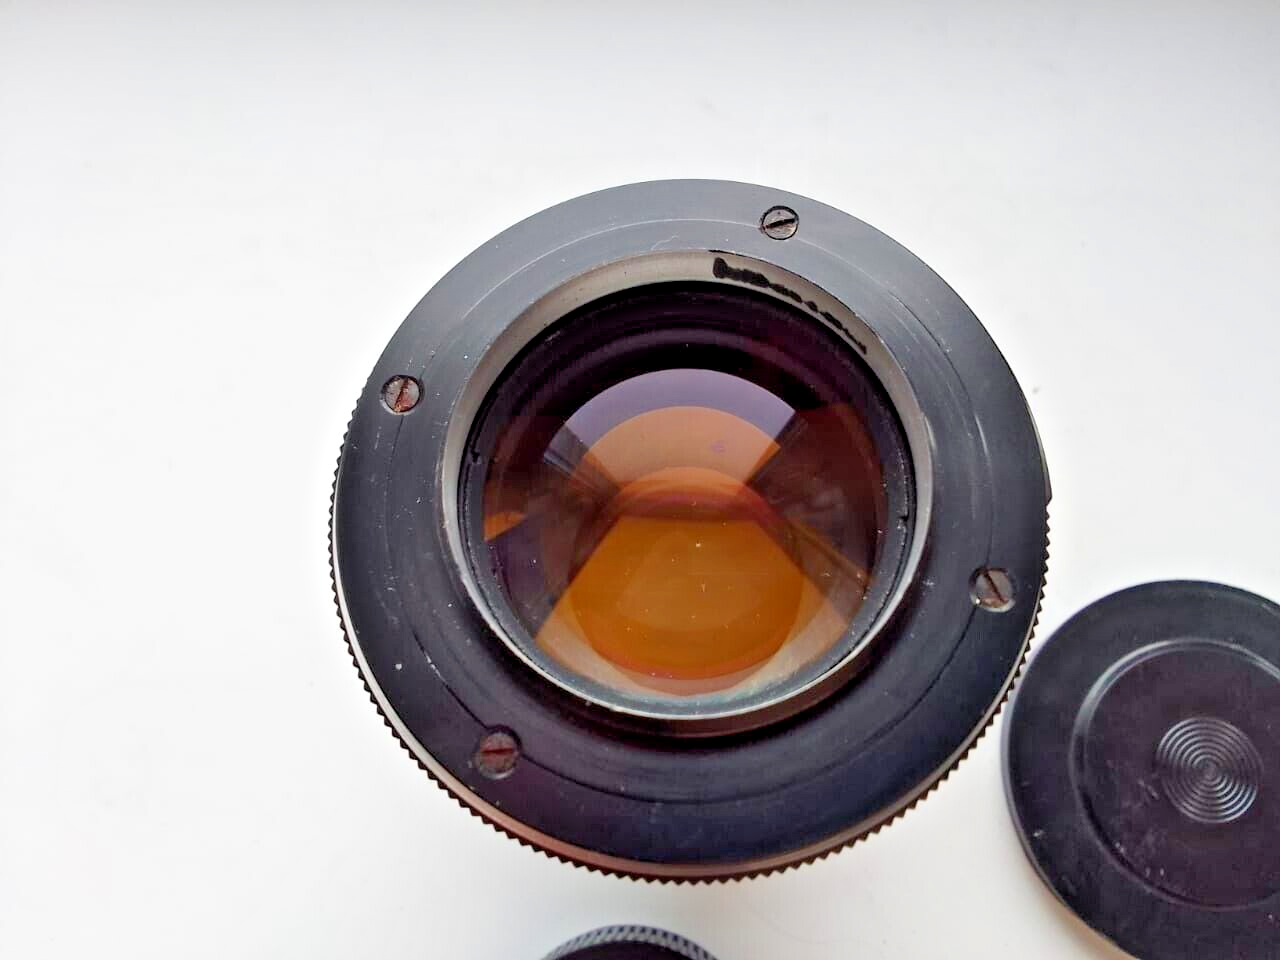 Cine lens PO2-2M 2/75 M42 RO2-2M OKC6-75-1 high quality lens